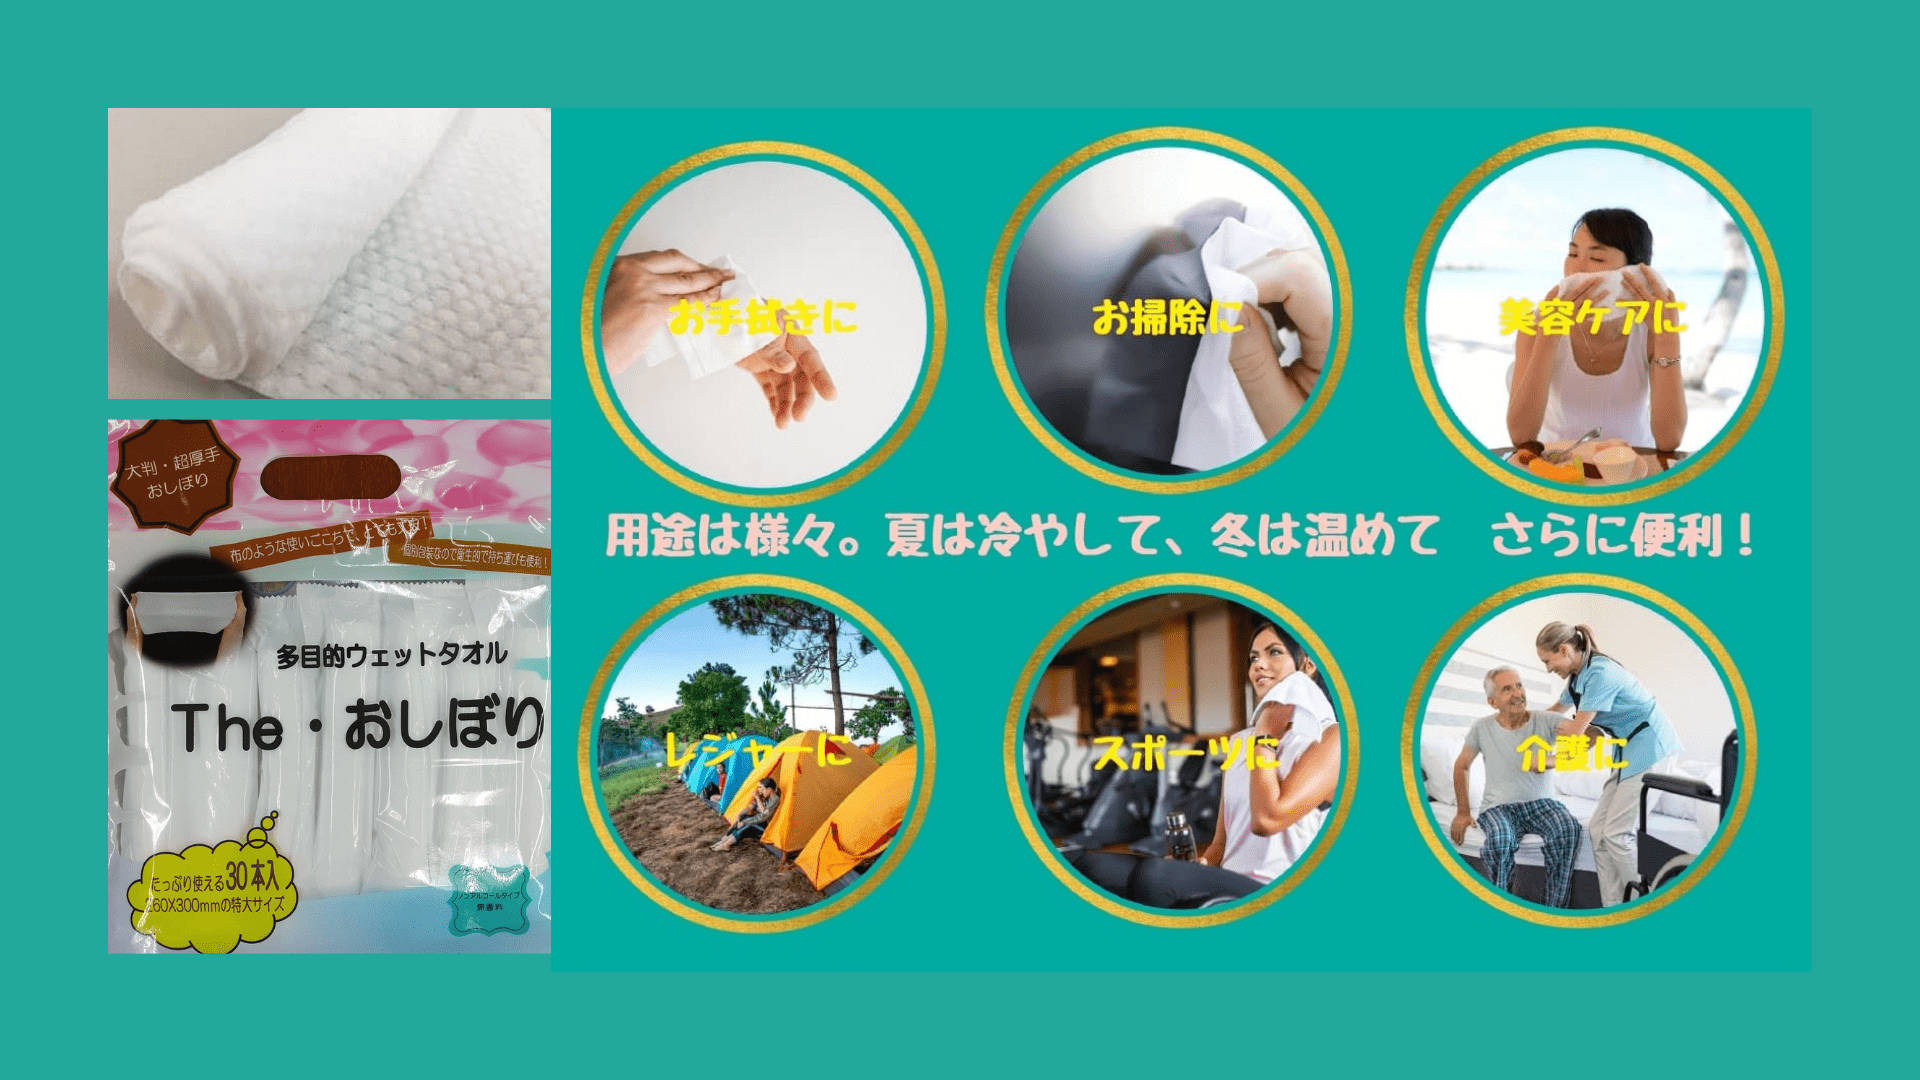 ウェットタオル 「ＴＨＥ おしぼり」 多目的・使い捨て・個包装 | 日本エンドレス株式会社